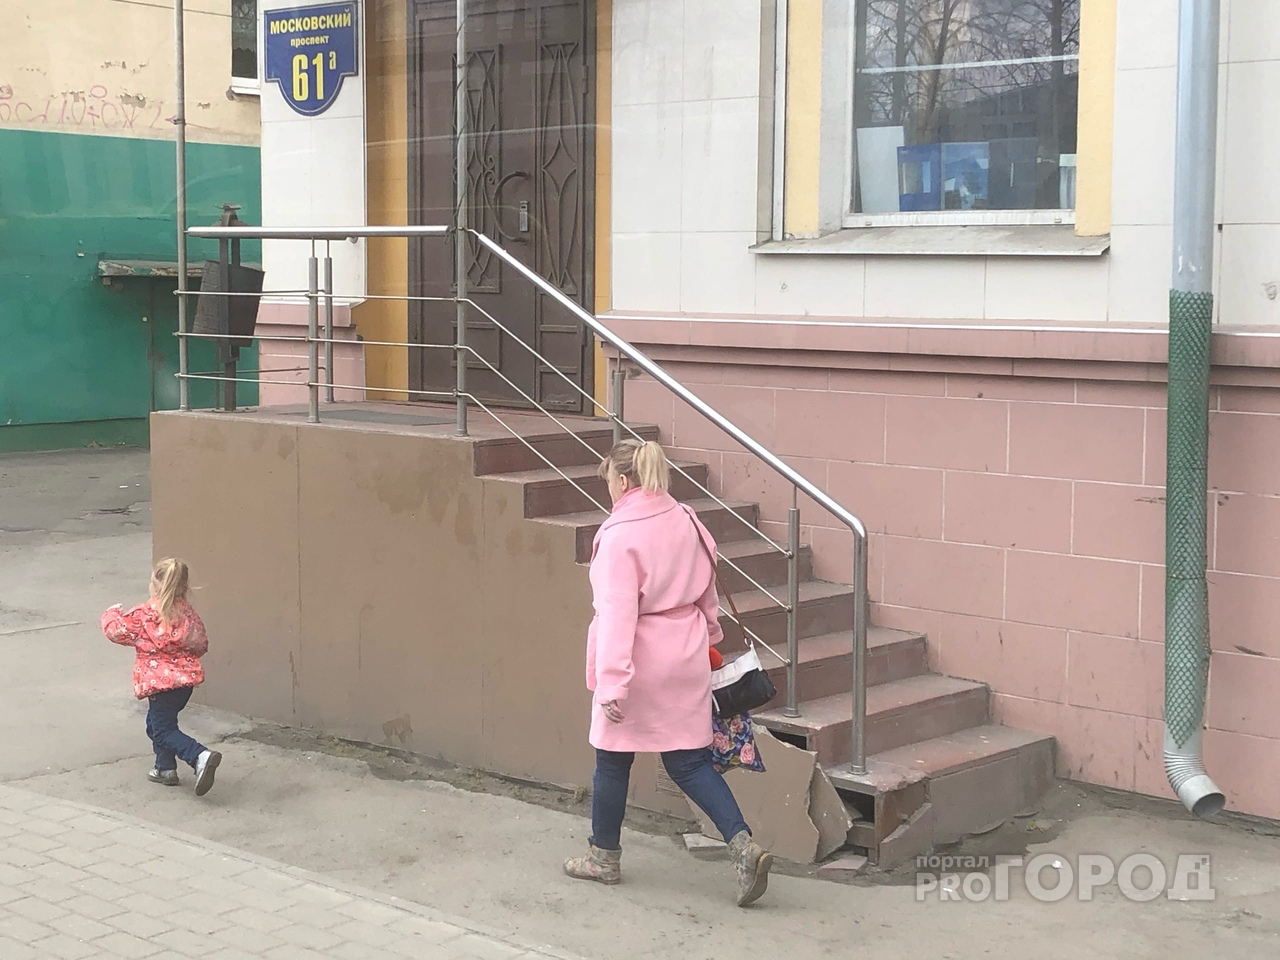 "Не торопитесь": политик призвал ярославцев не писать сразу заявление о 10 тысячах на ребенка